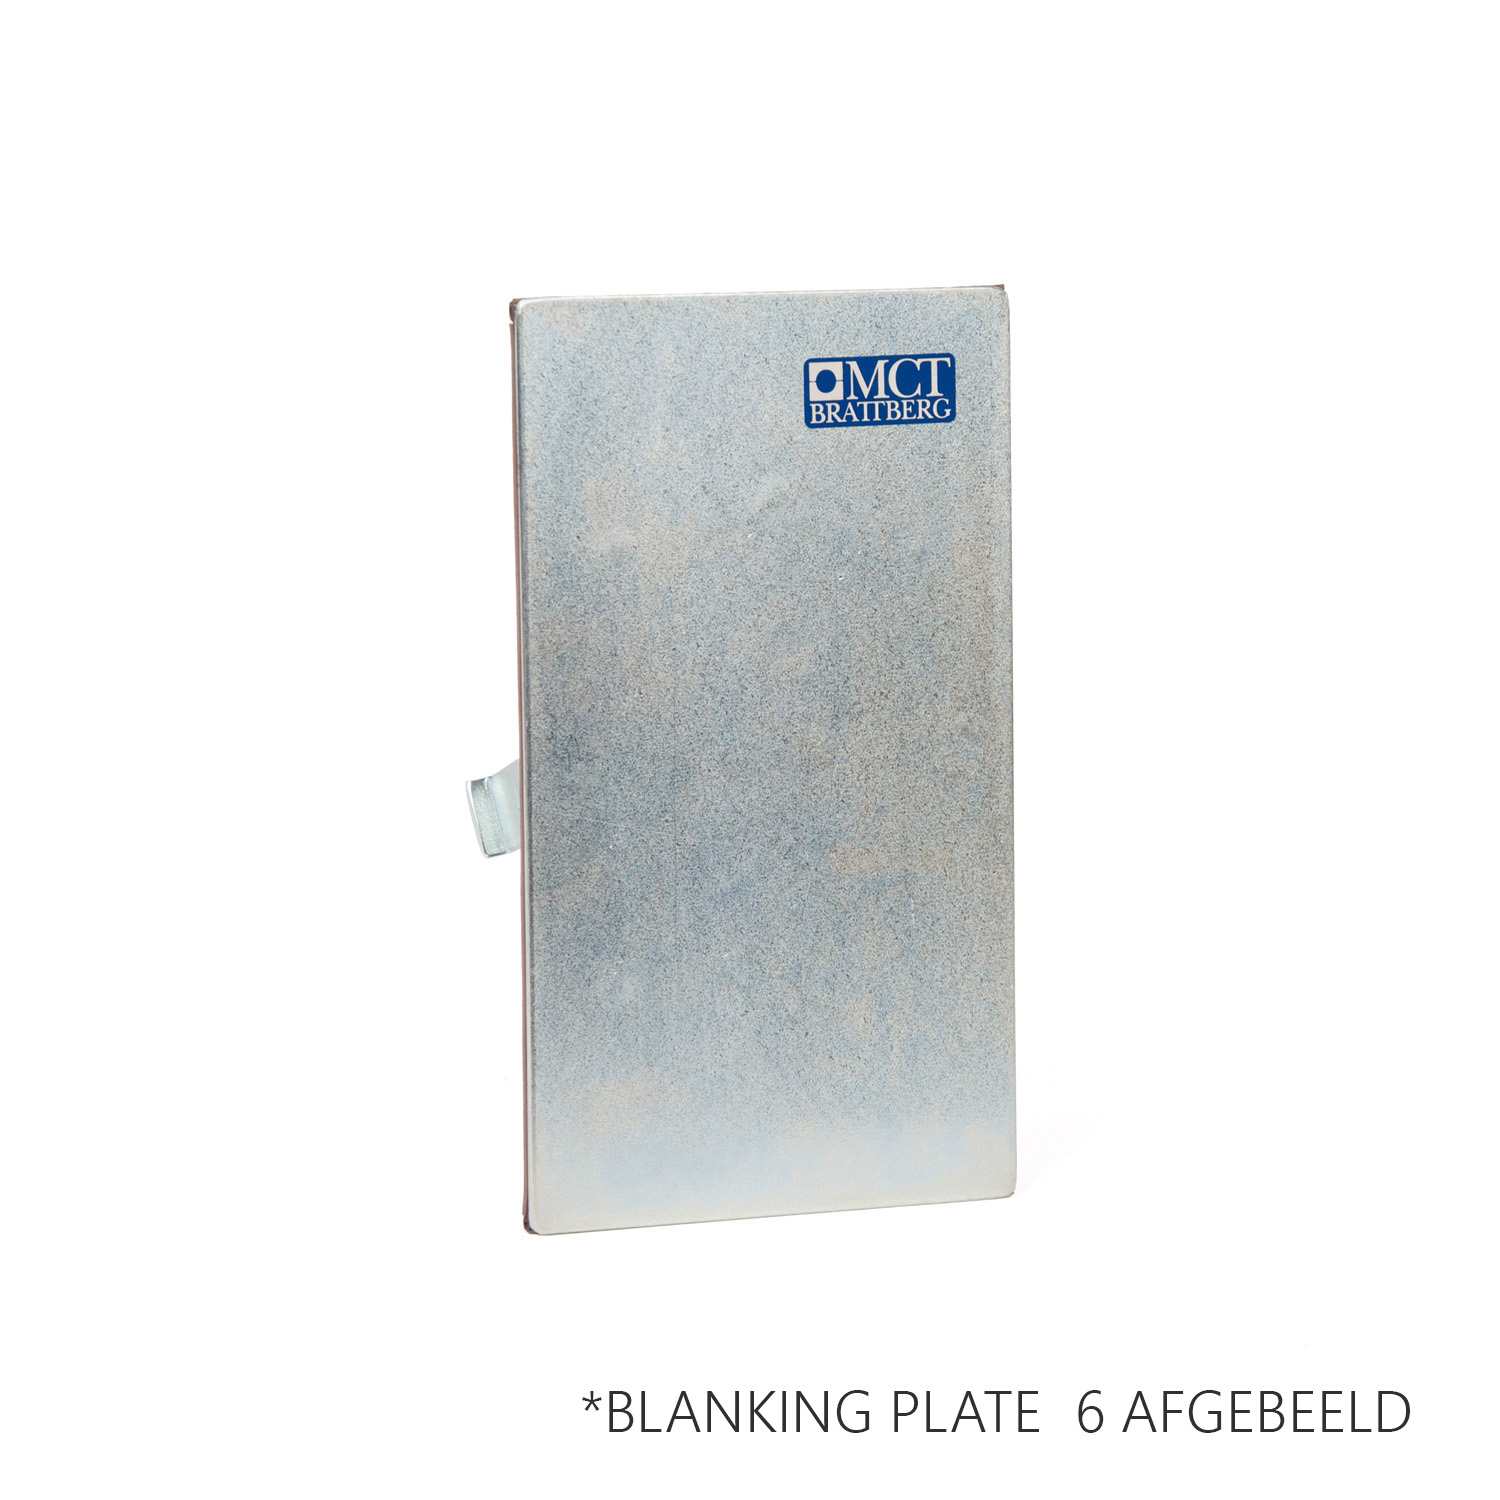 BLANKING PLATE 6 Blanking plate gegalvaniseerd -voor het afdichten van het frame voor de installatie.